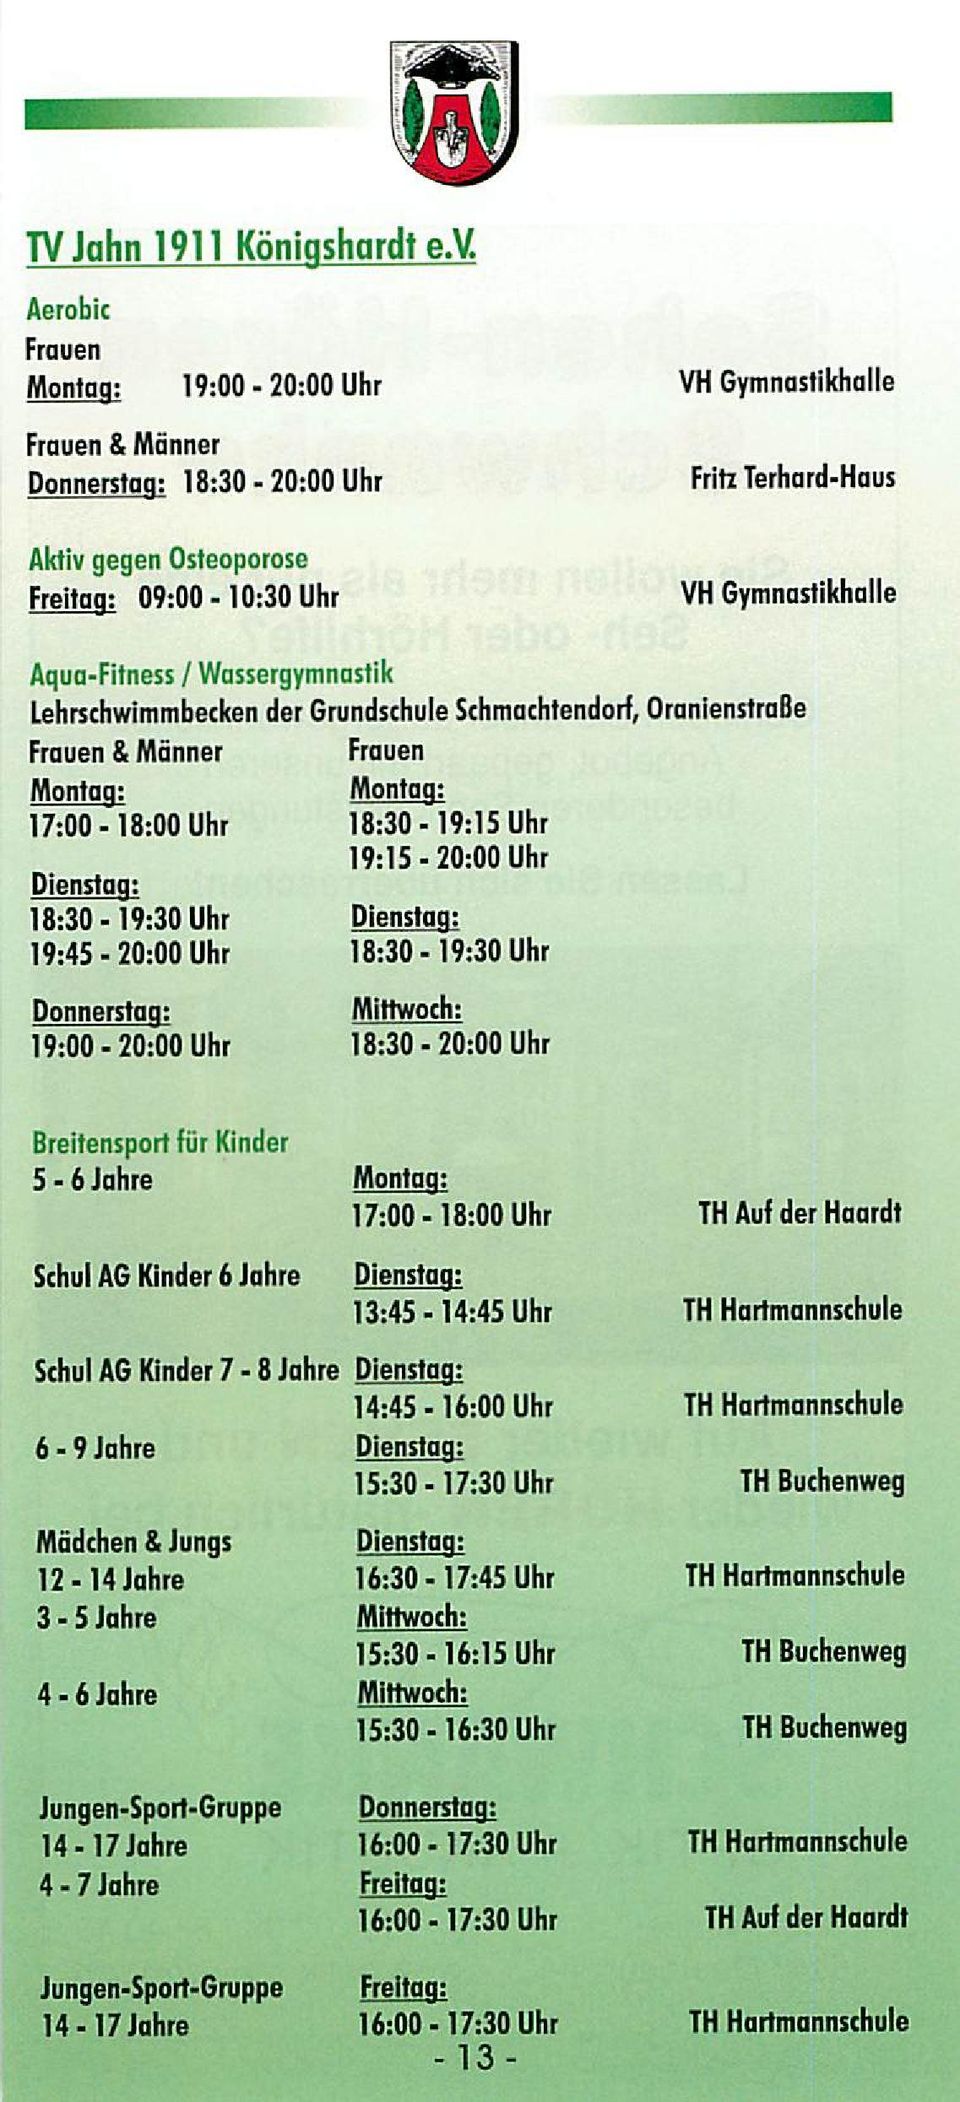 Aqua-Fitness / Wassergymnastik Lehrschwimmbecken der Grundschule Schmachtendorf, OranienstraBe Frauen & Männer Frauen Montag: Montag: 17:00-18:00 Uhr 18:30-19:15 Uhr 19:15-20:00 Uhr Dienstag: